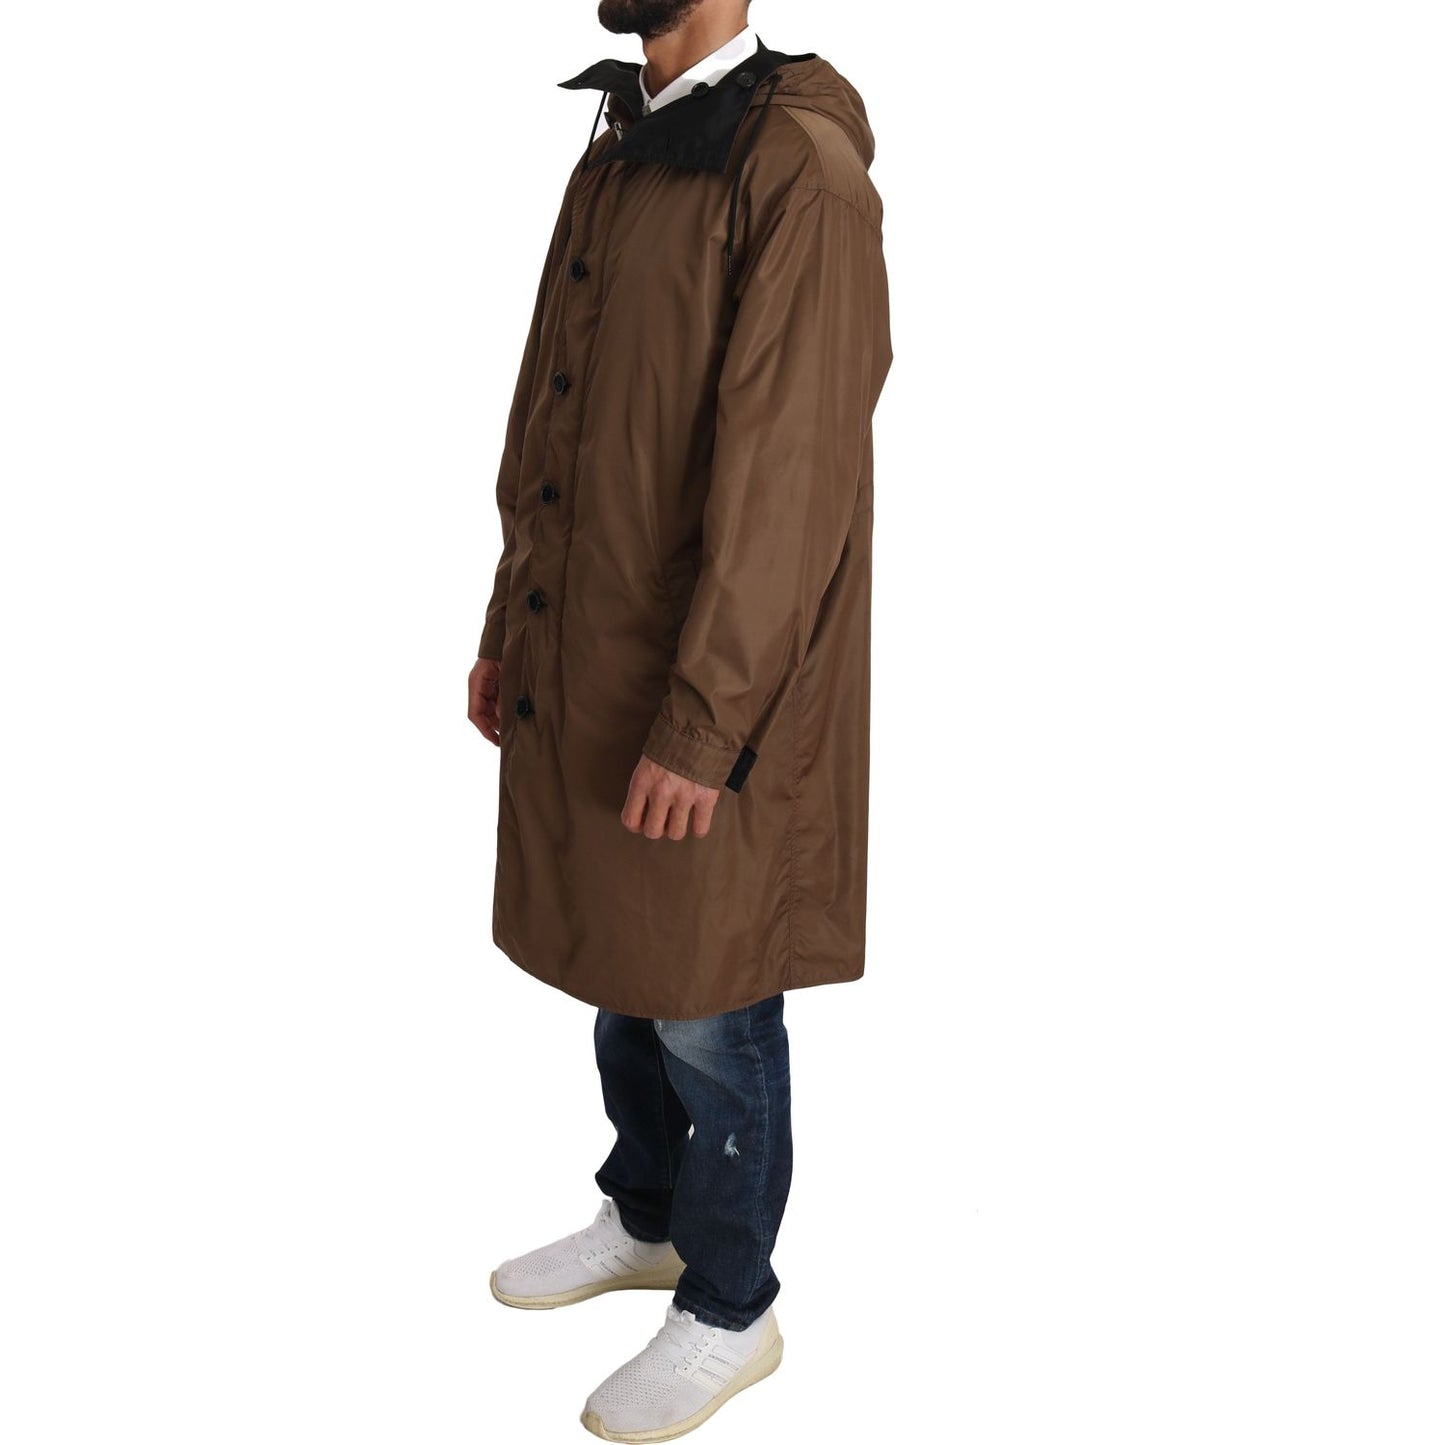 Dolce & Gabbana Elegant Reversible Hooded Raincoat black-brown-hooded-reversible-raincoat Coats & Jackets IMG_0762.jpg